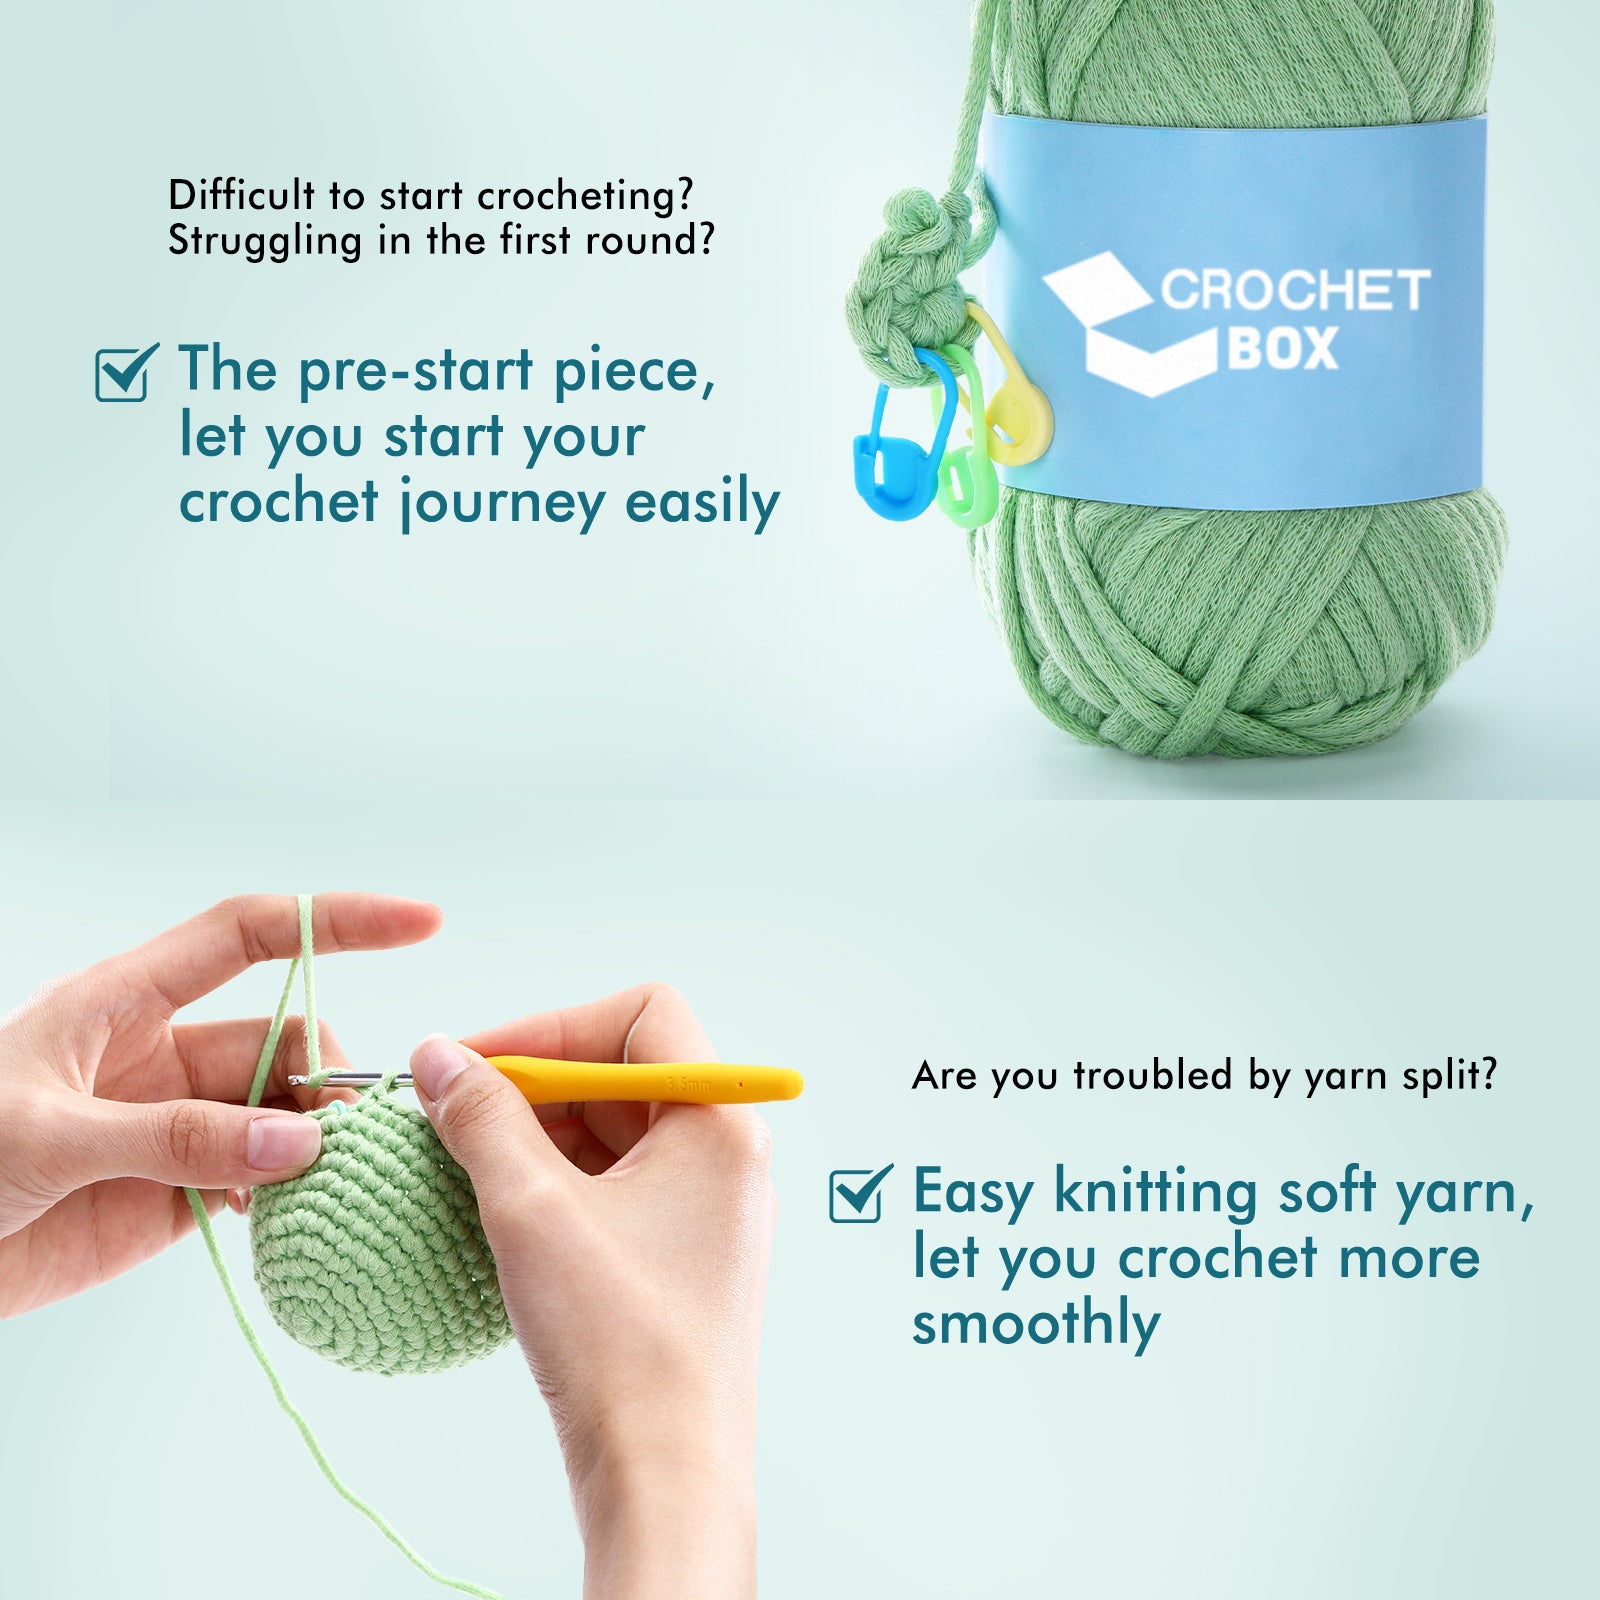 Crochet Starter Kit - Avolotl